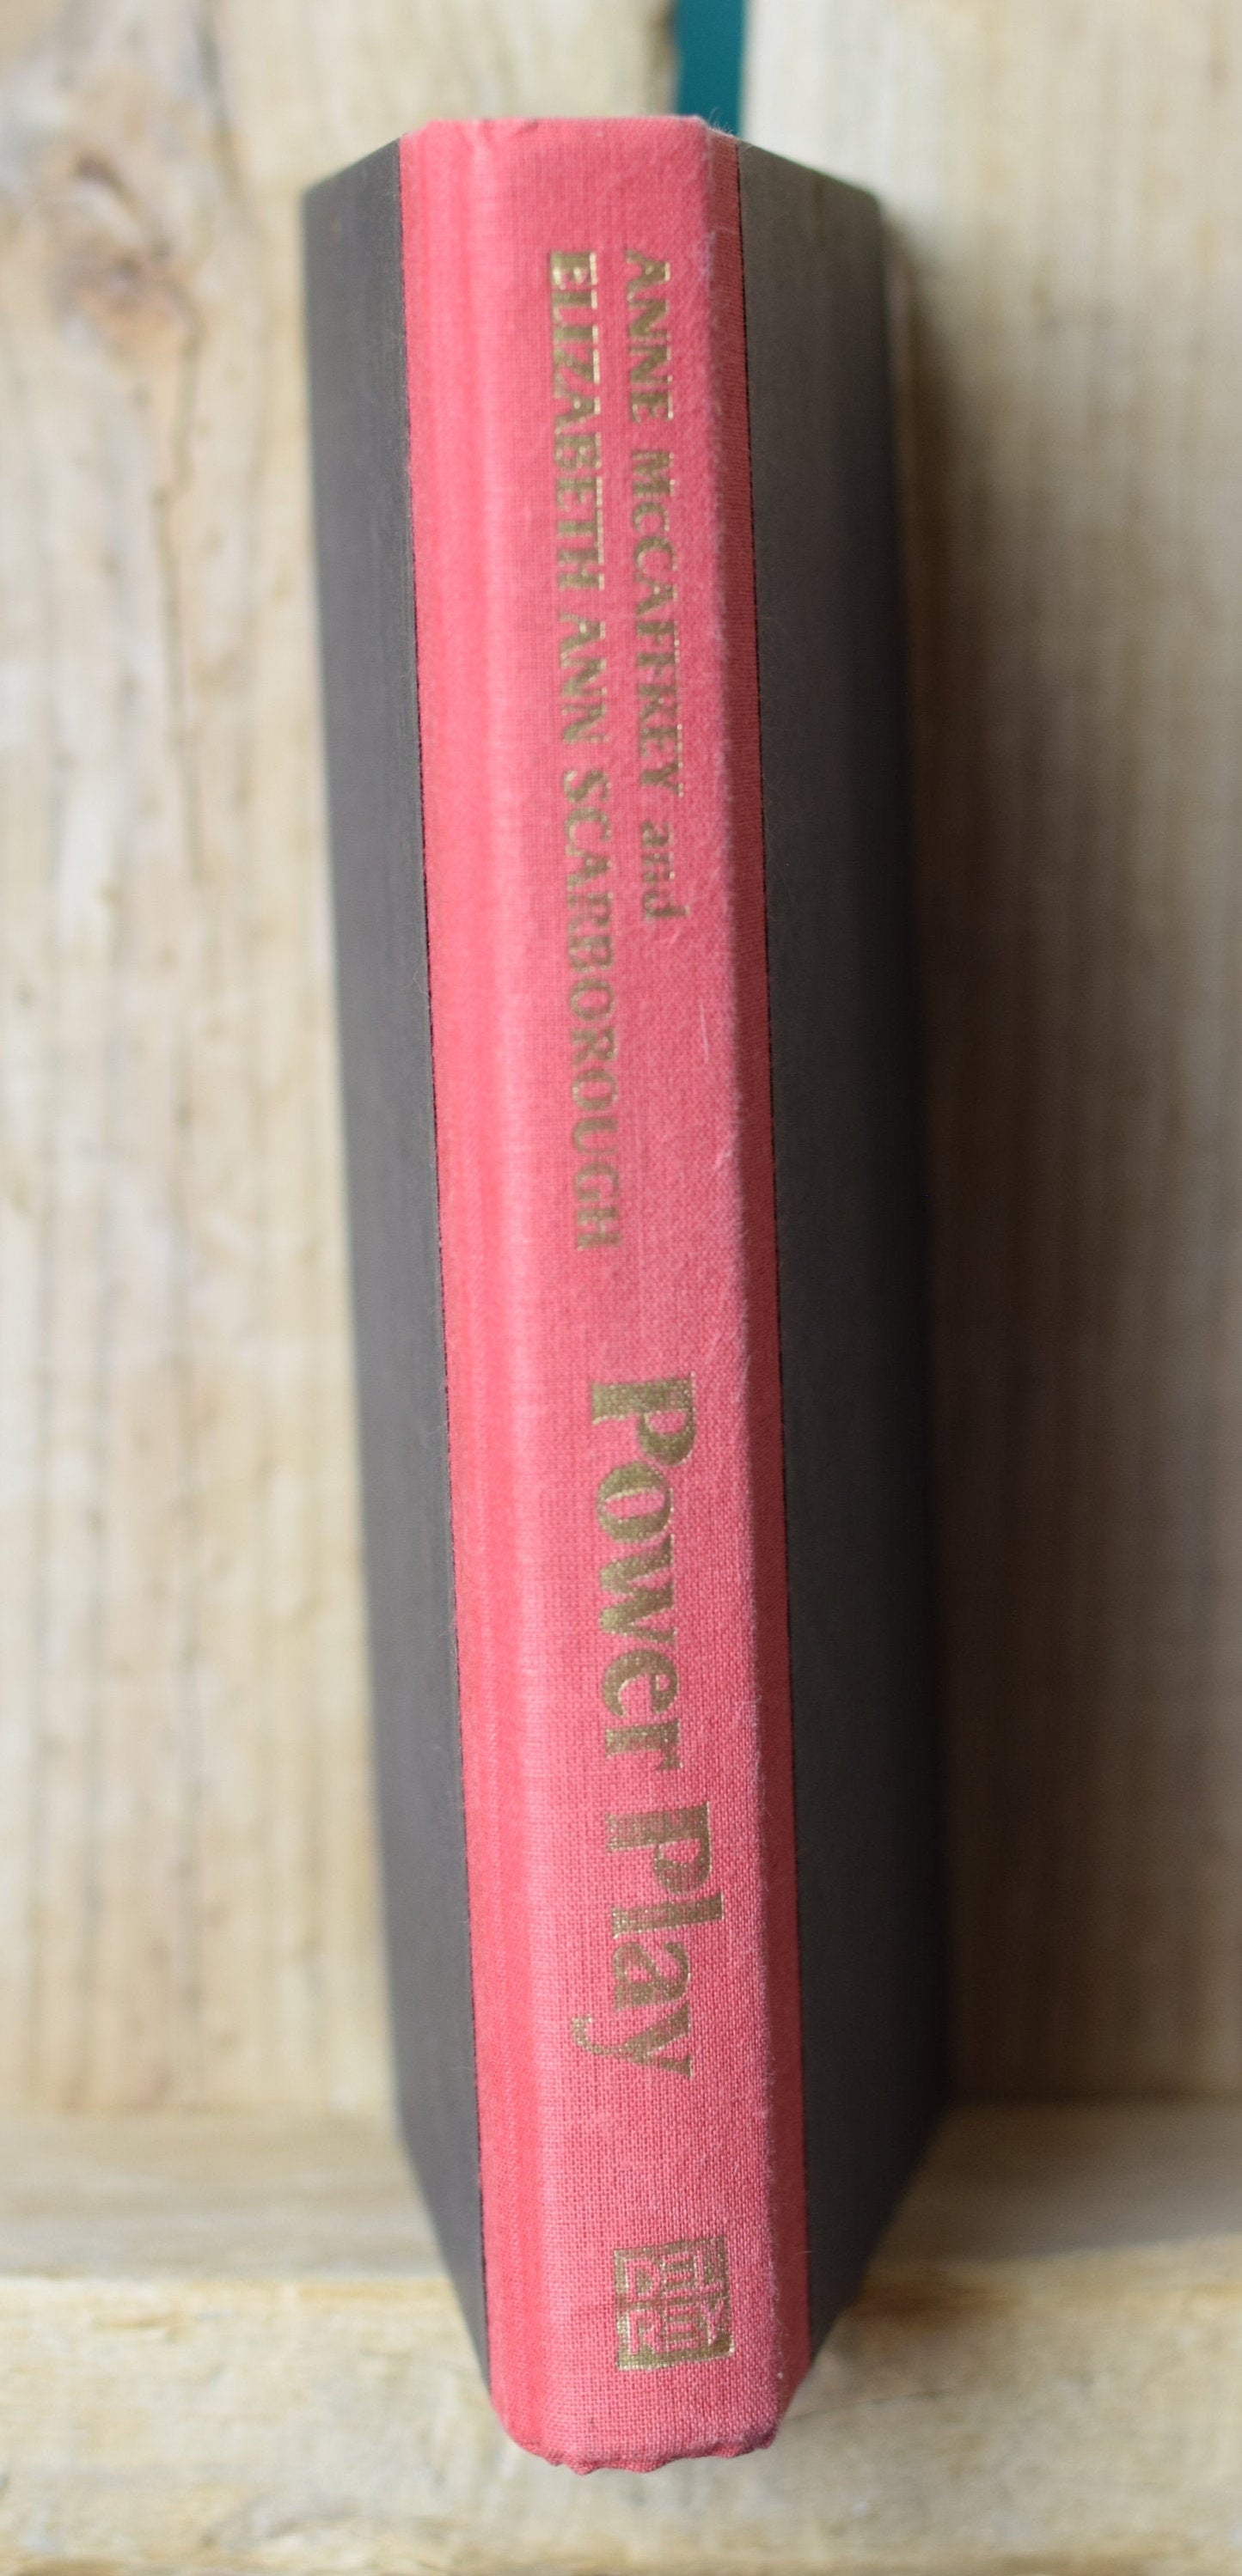 Vintage Fantasy Hardback Novel: Anne McCaffrey & Elizabeth Ann Scarborough - Power Play FIRST EDITION